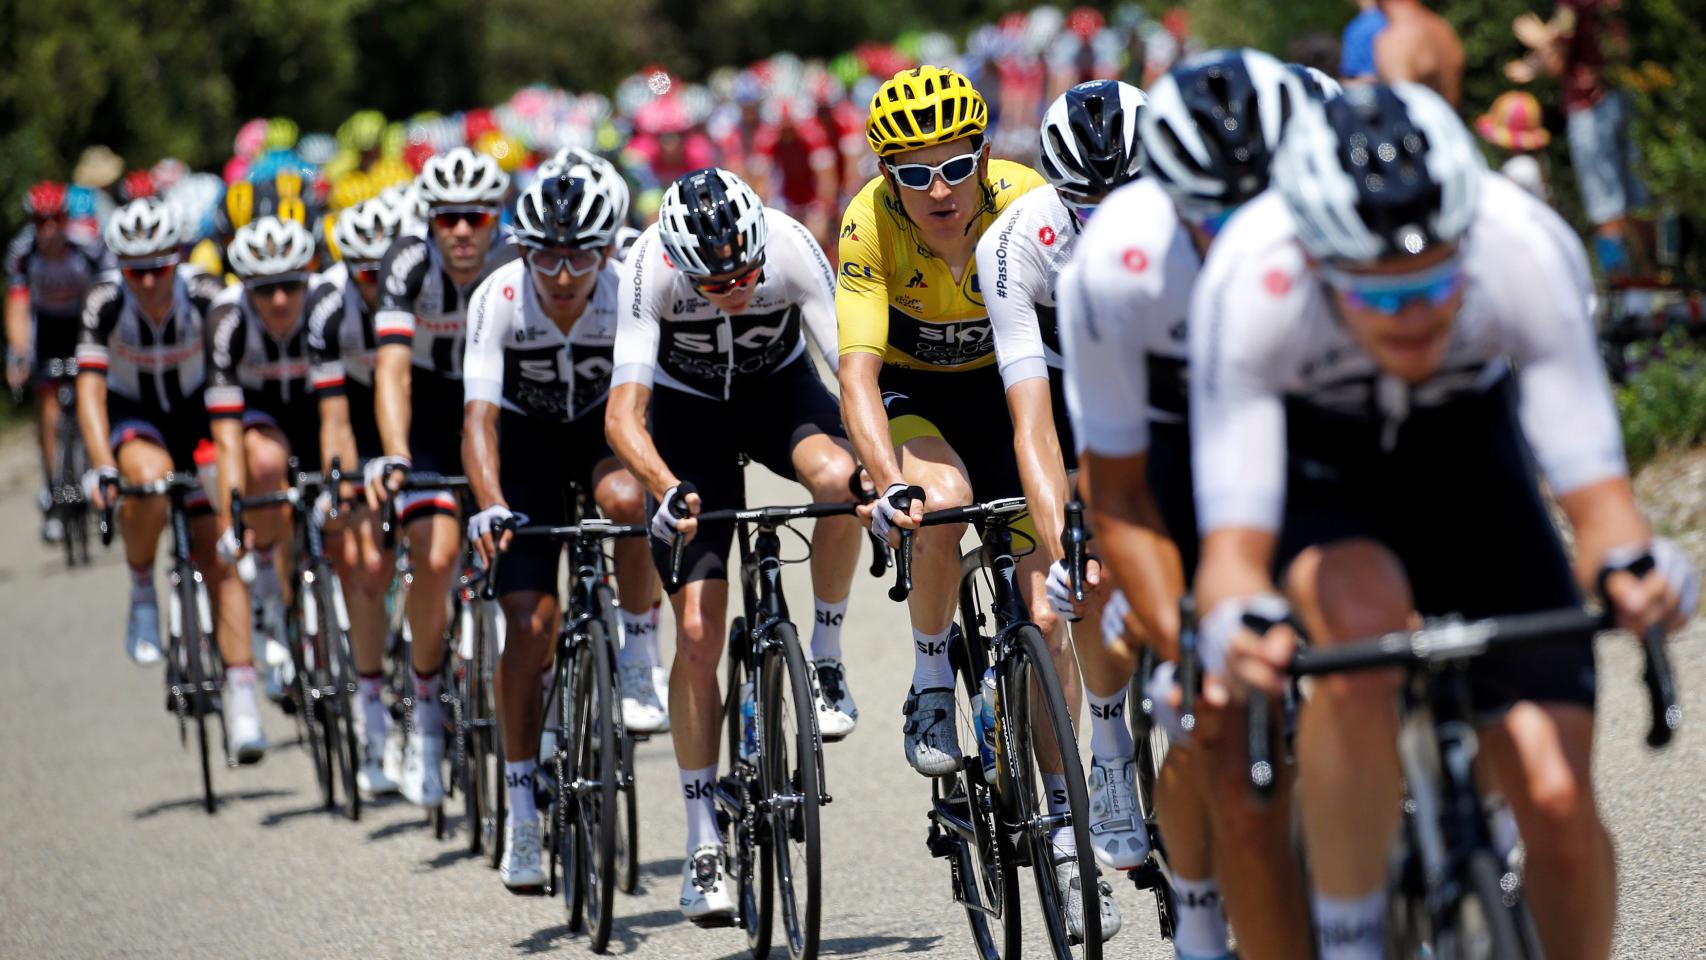 Sky marca el ritmo del pelotón en la 14º etapa del Tour de Francia.